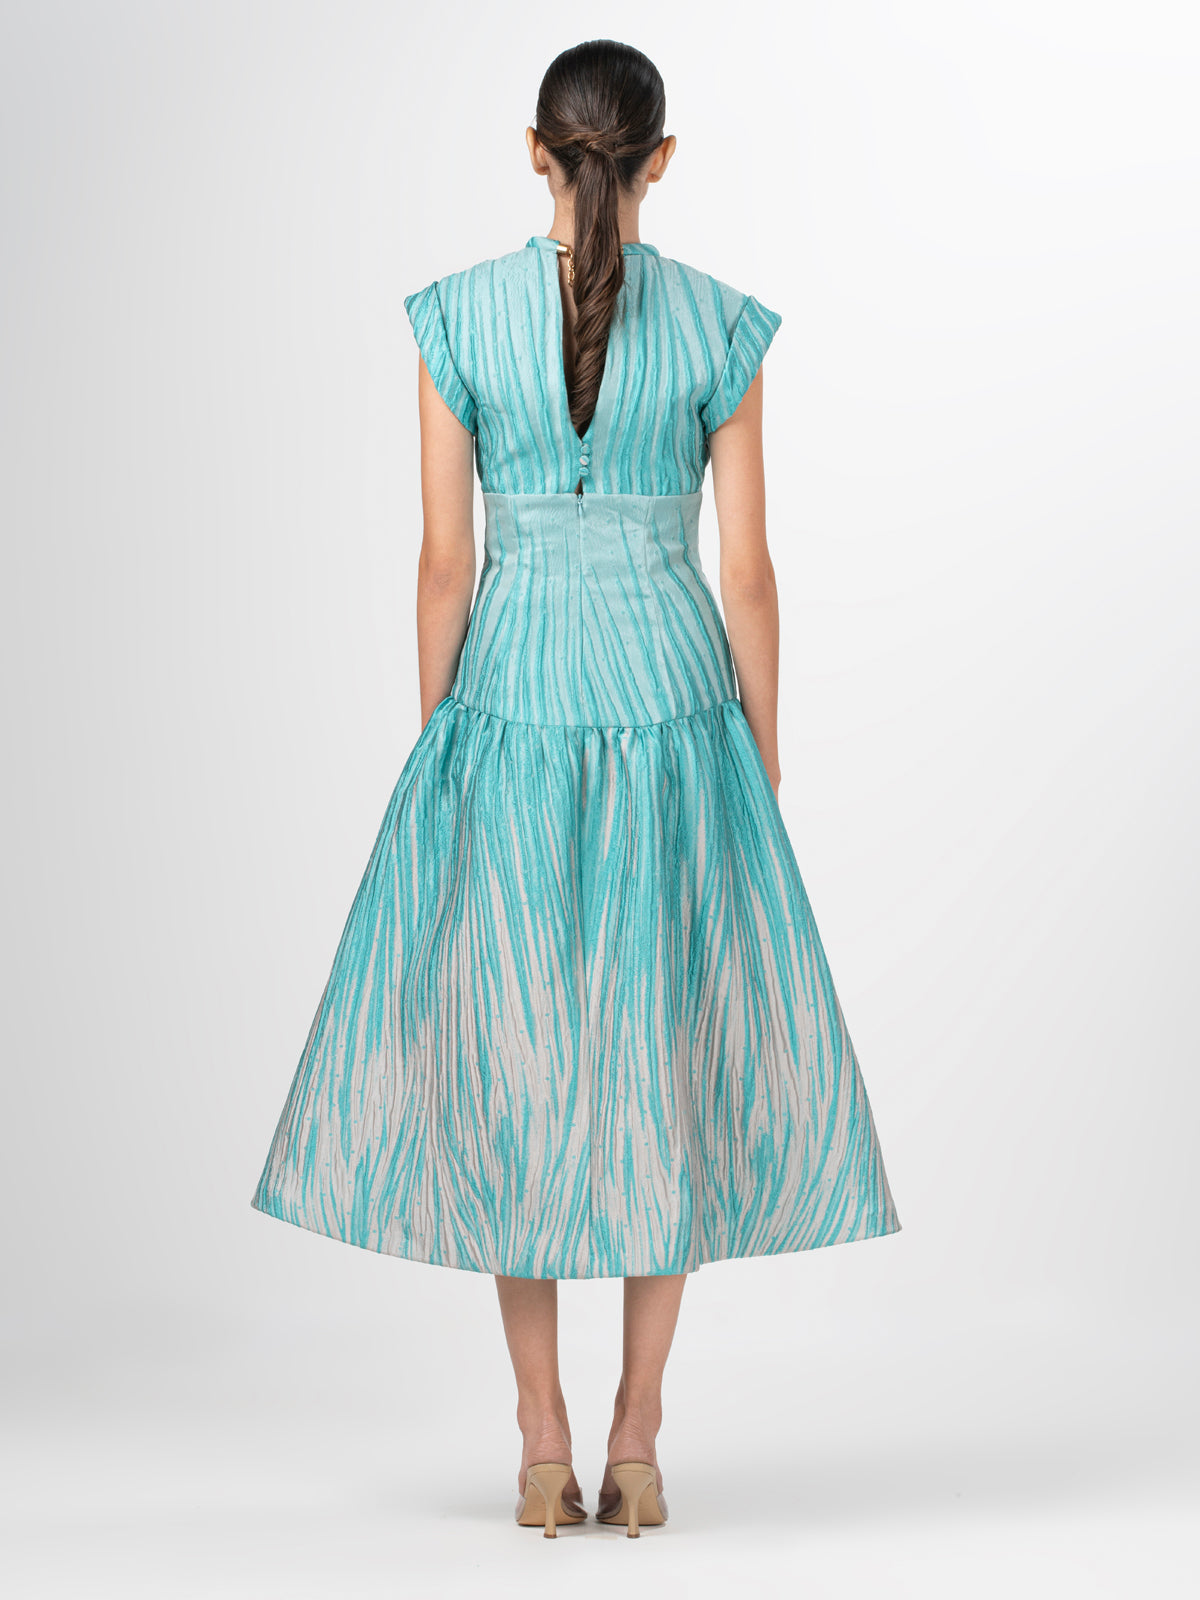 Conza Dress Aqua Abstract Ripple